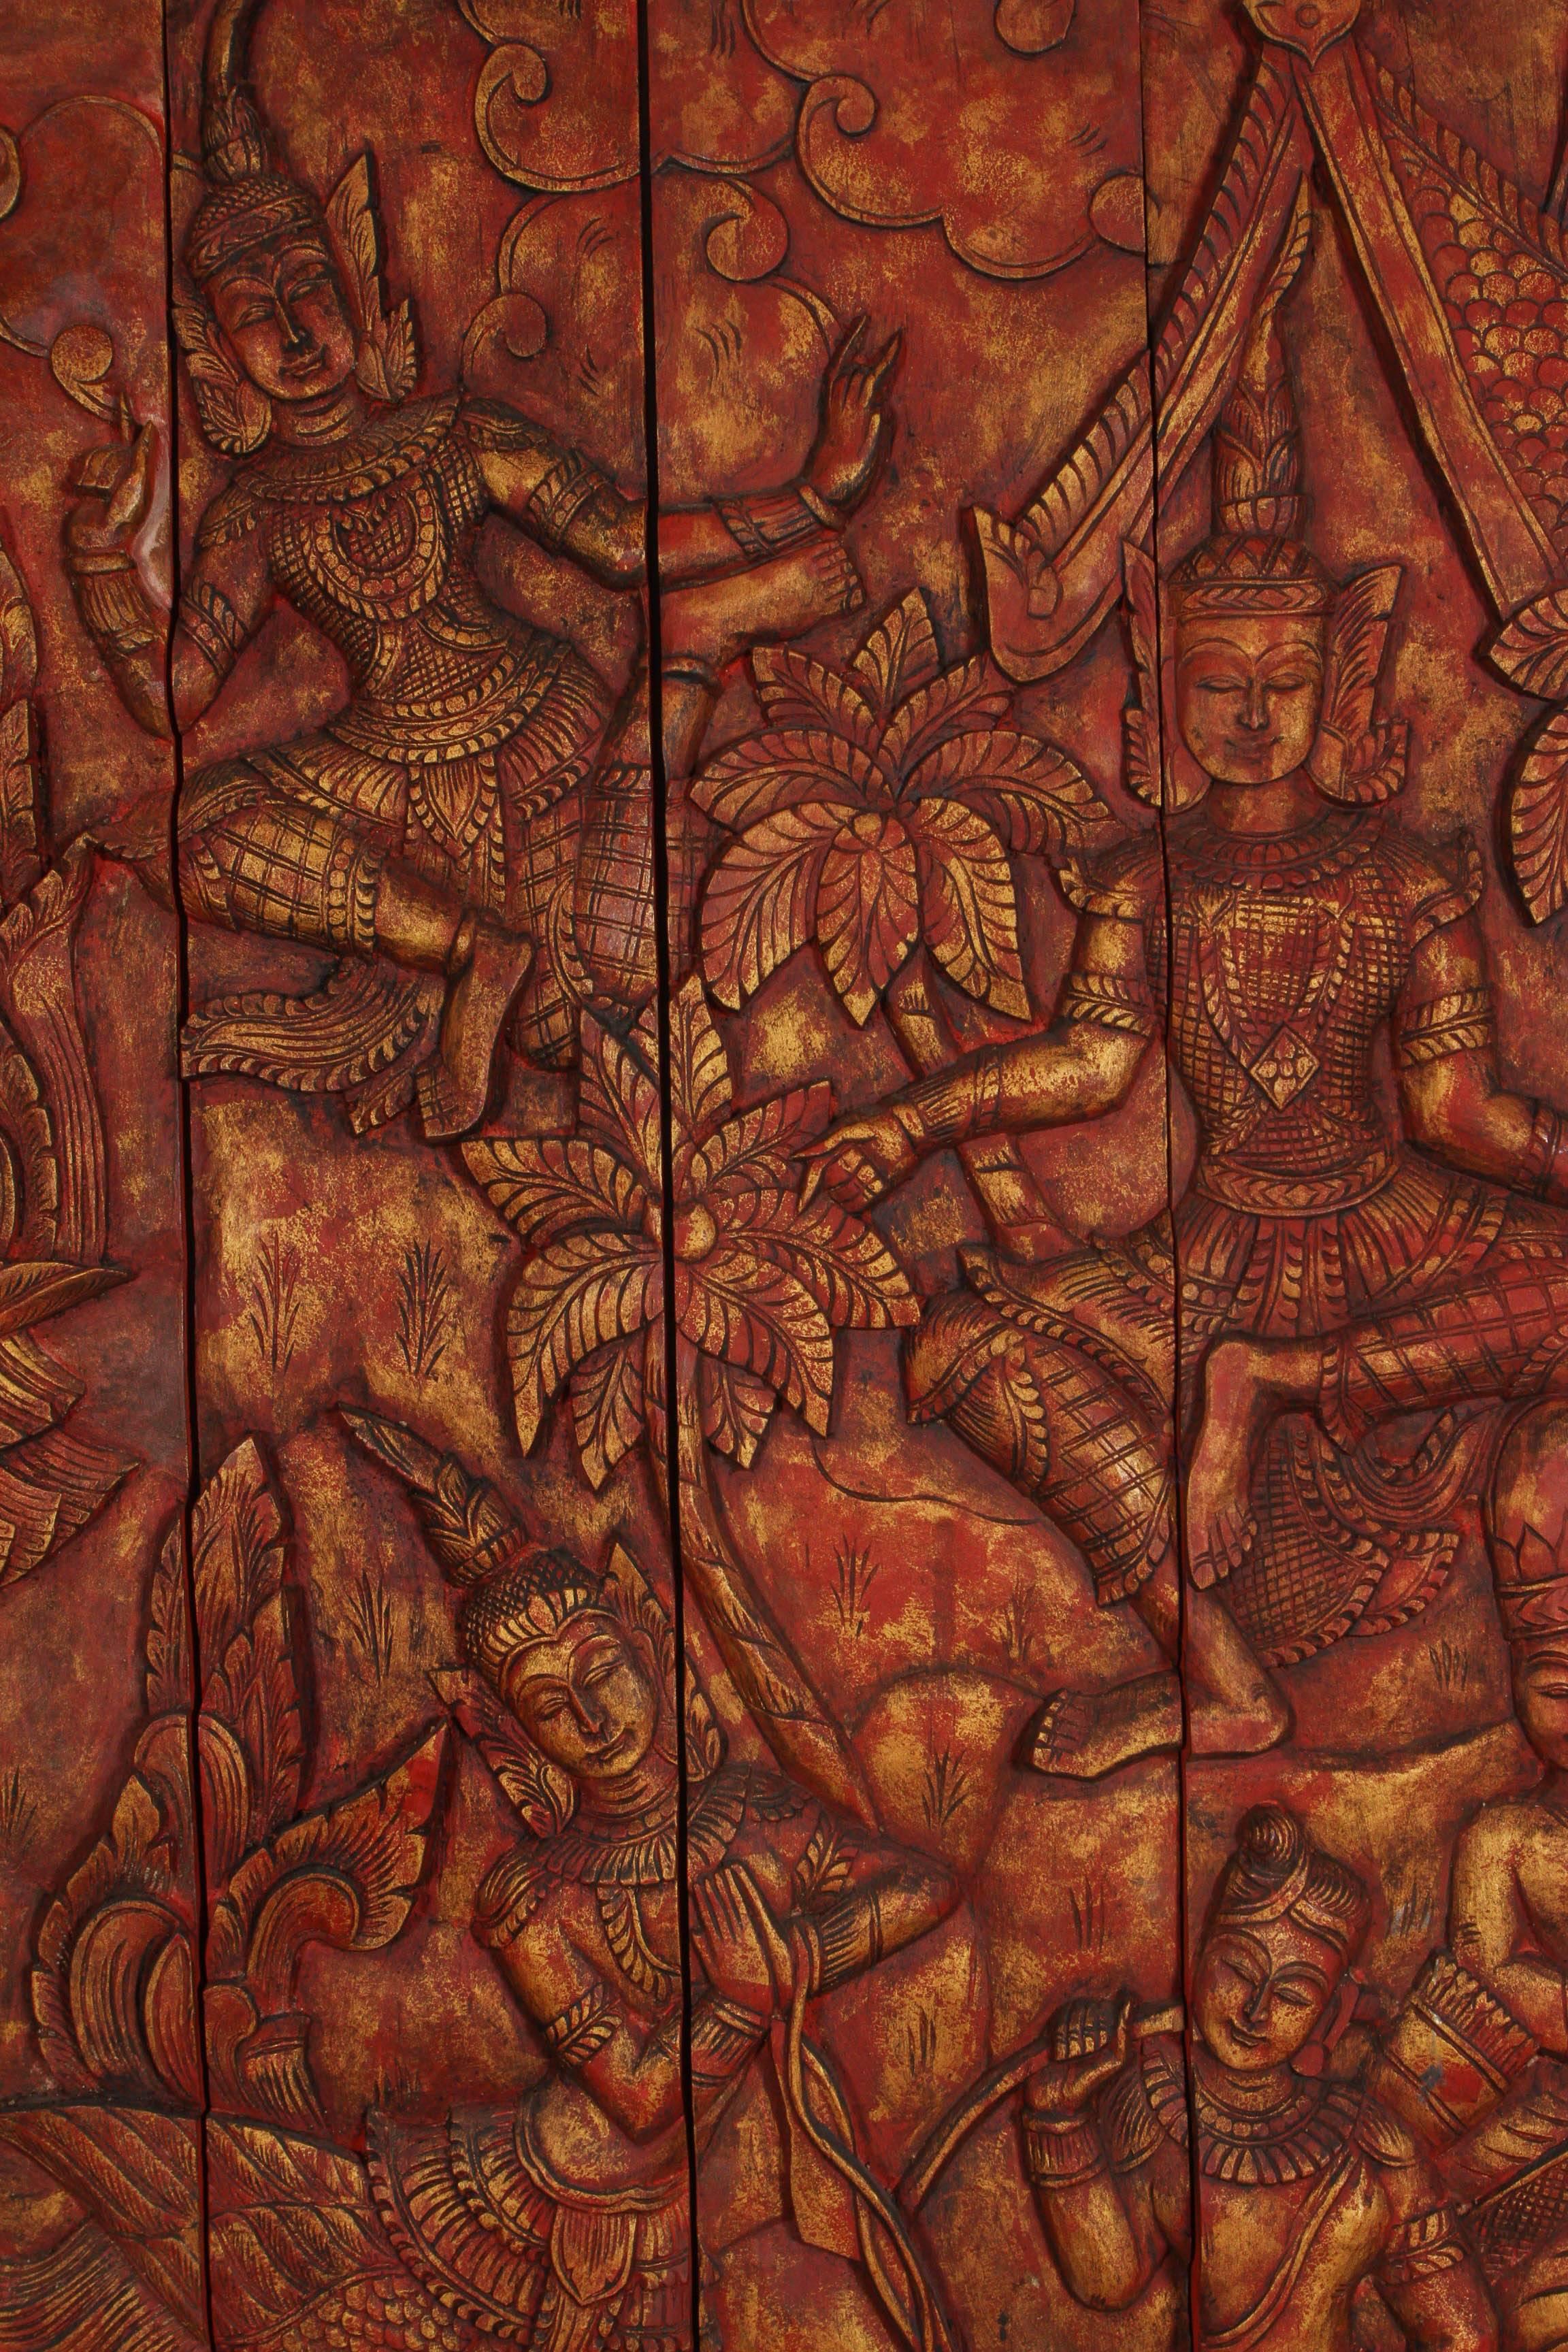 Antike asiatische Thai monumental, Messung 8 'x 8' handgeschnitzten hölzernen Tempel-Panel.
Definitiv ein einzigartiges Stück thailändischen Rot und Gold-Panel mit detaillierten Hand geschnitzt mit Relief-Designs von südasiatischen Thai Kinnaris,